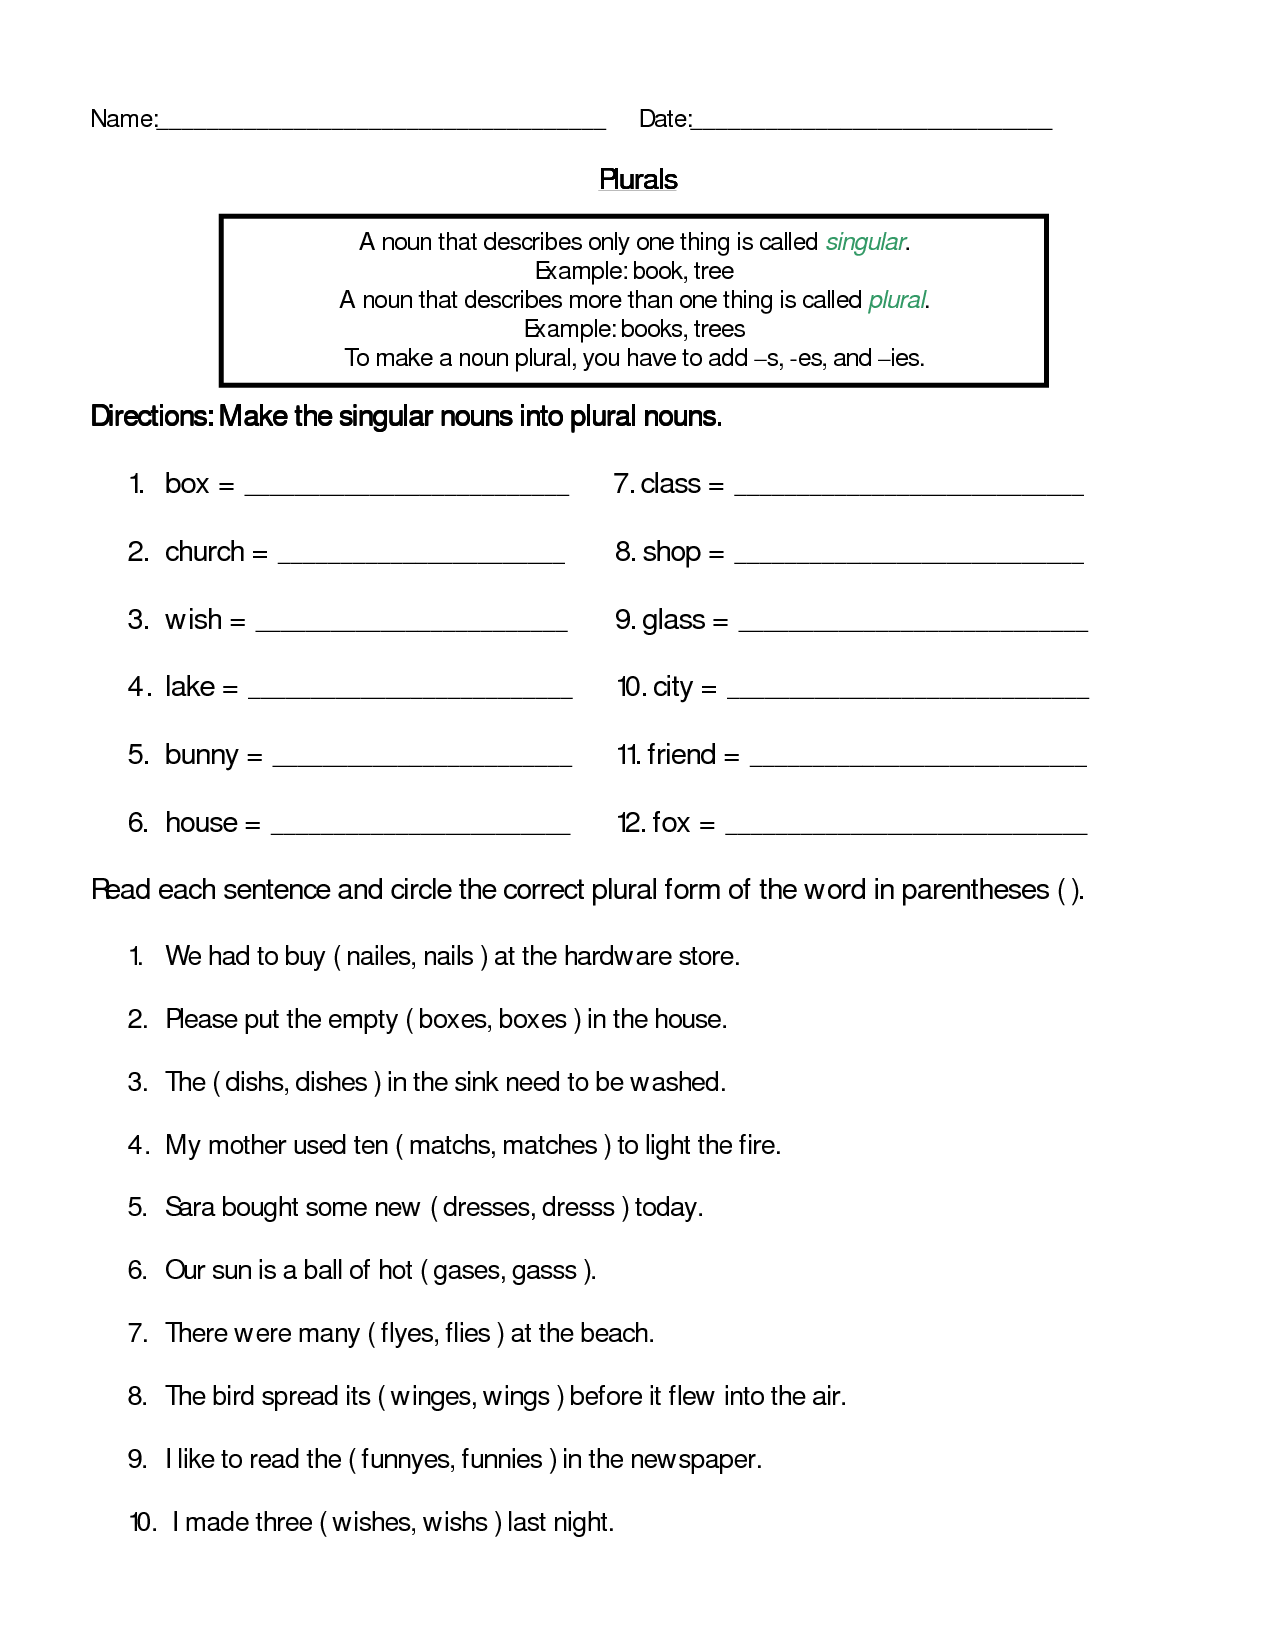 Singular And Plural Nouns Worksheet